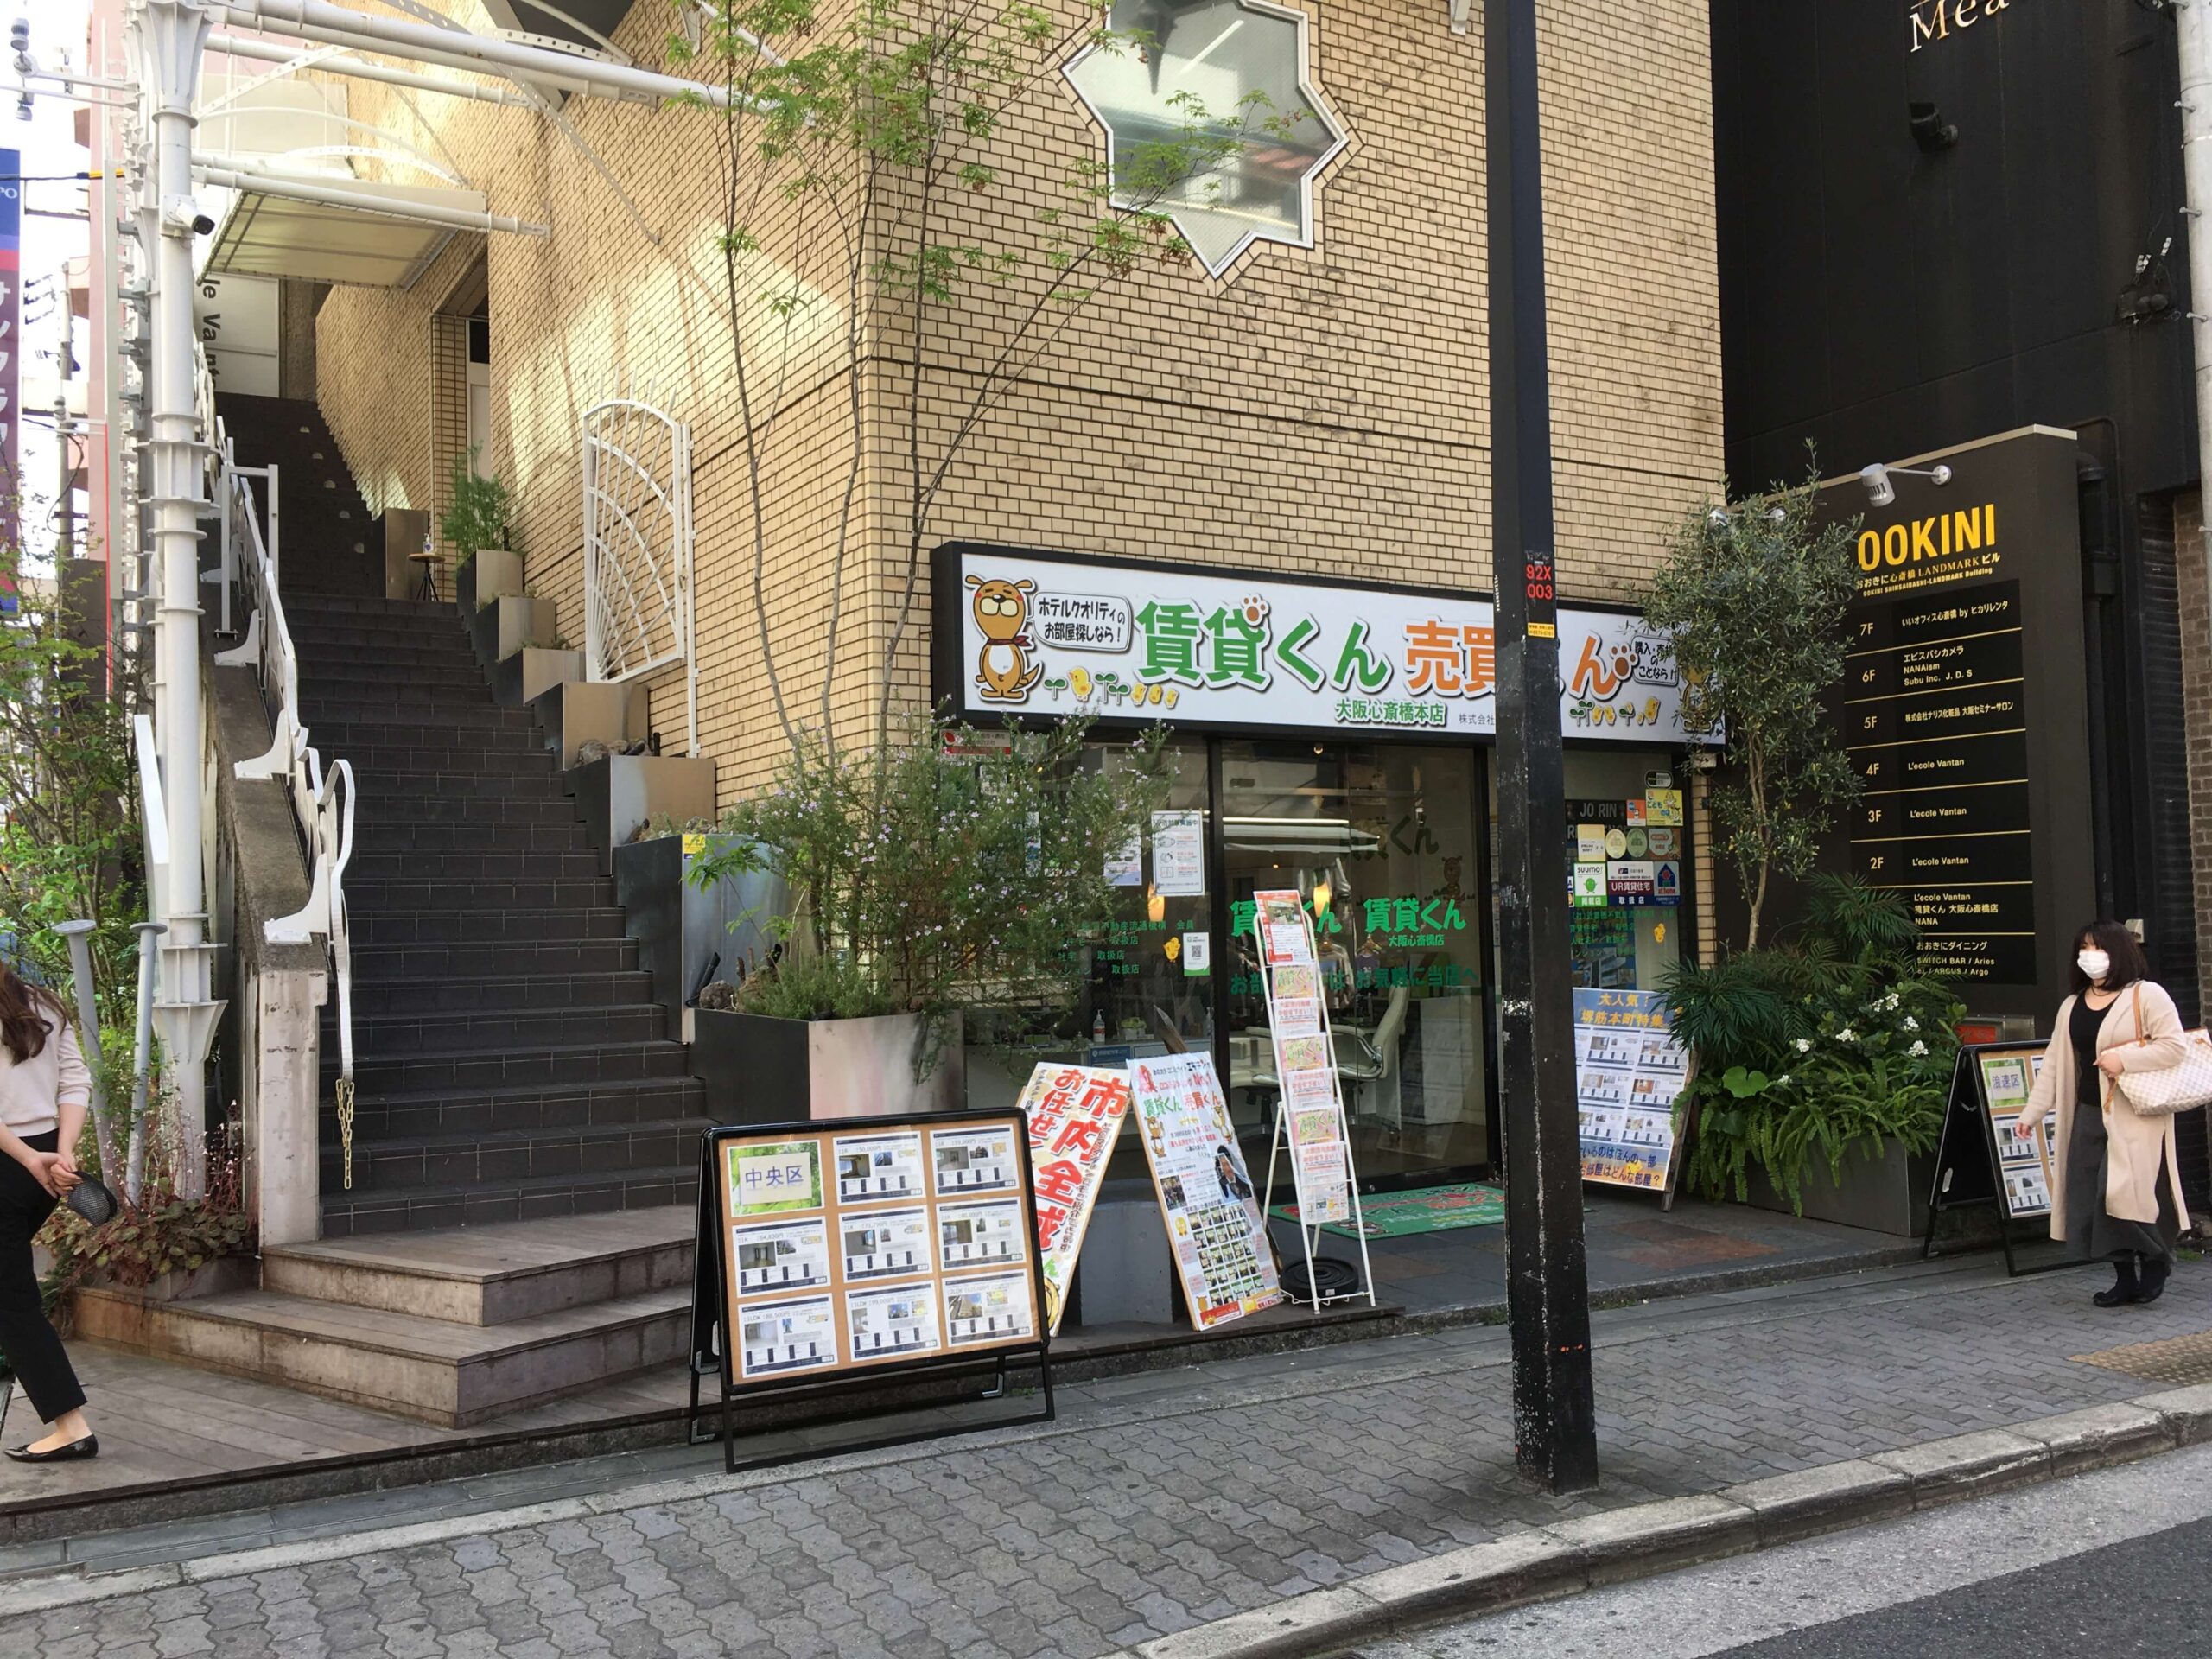 「賃貸くん」大阪心斎橋本店の入口